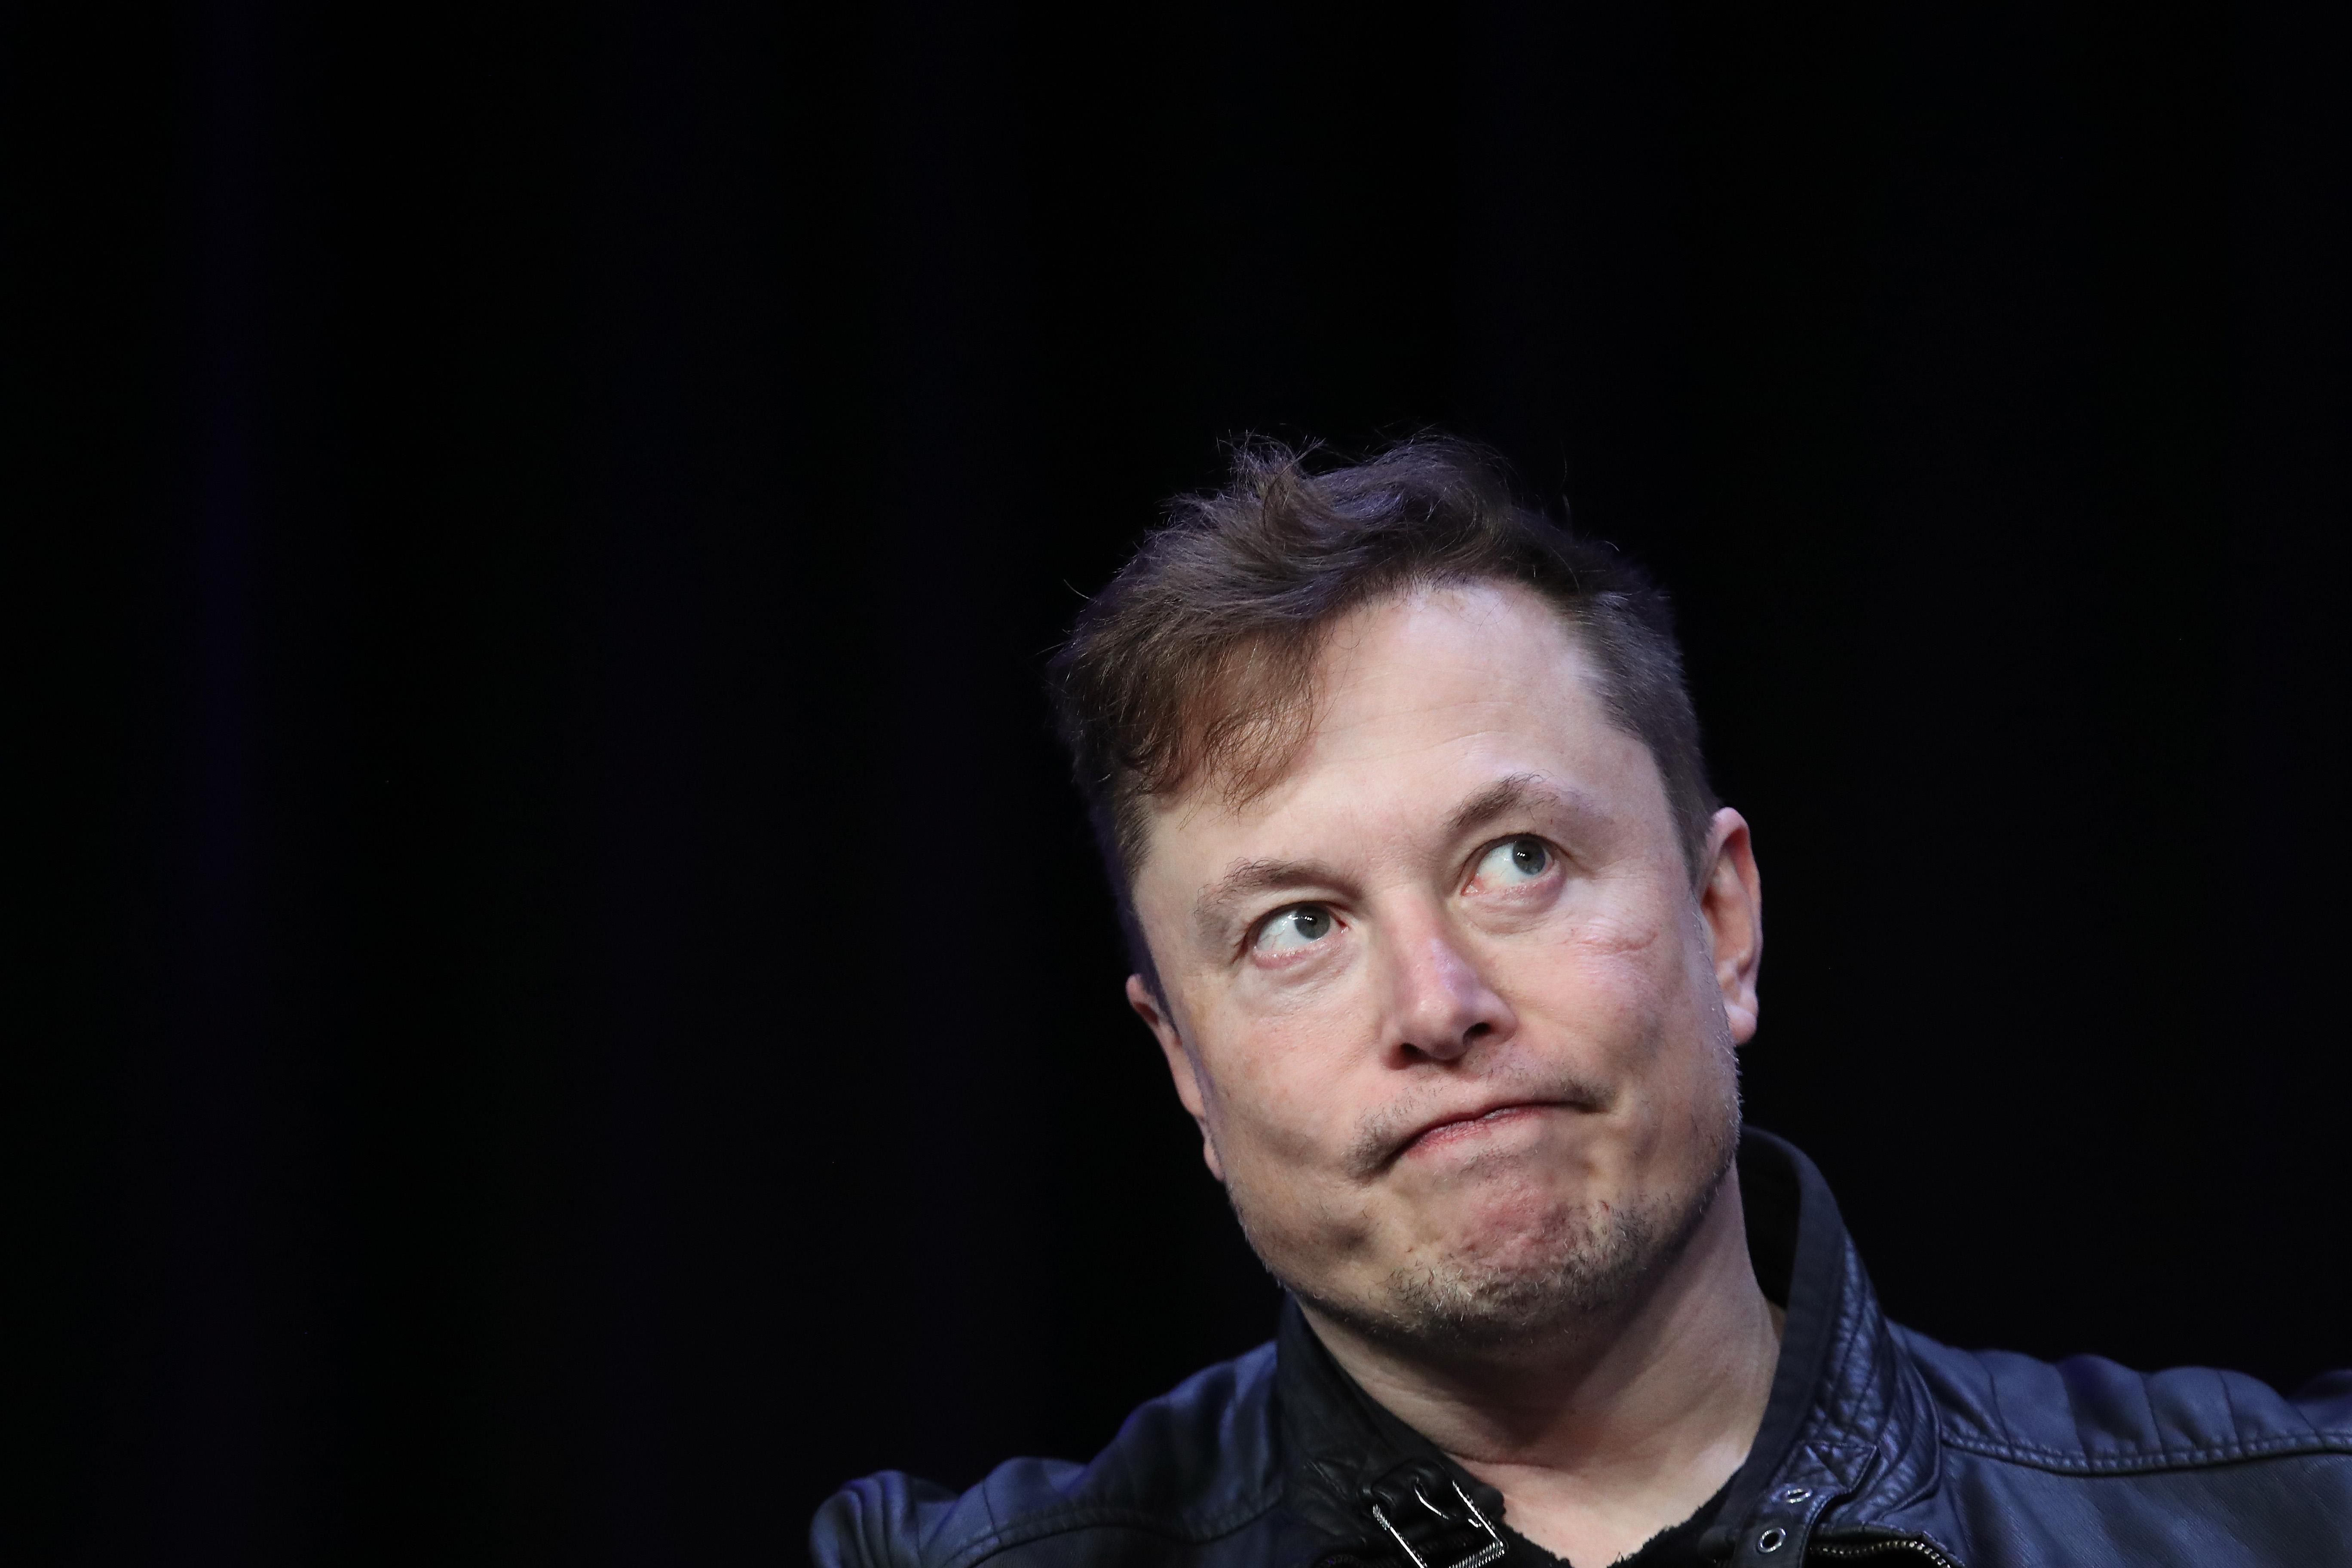 Илон Маск опубликовал пародийное видео на Си Цзиньпина, что может подорвать сделку Tesla с Китаем